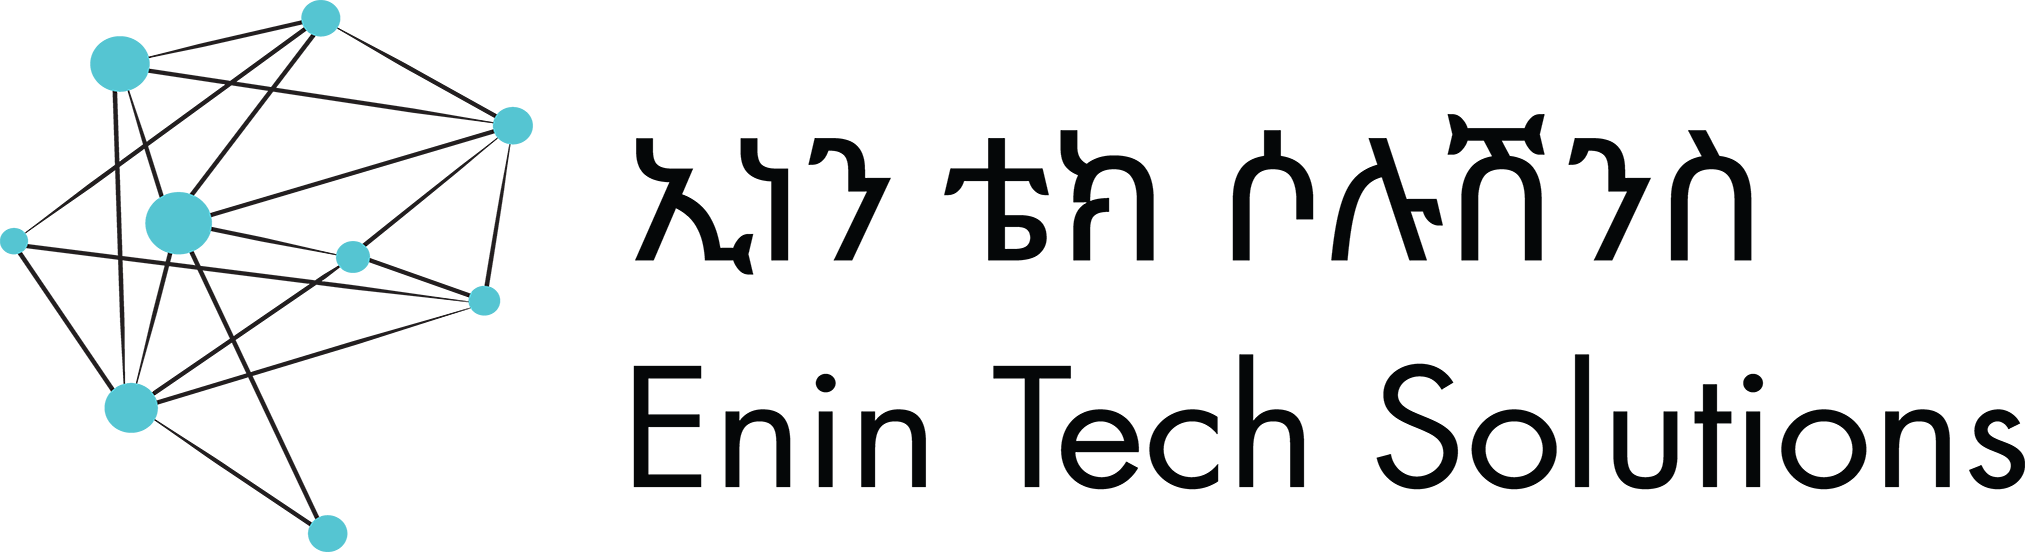 Enin Tech Solutions